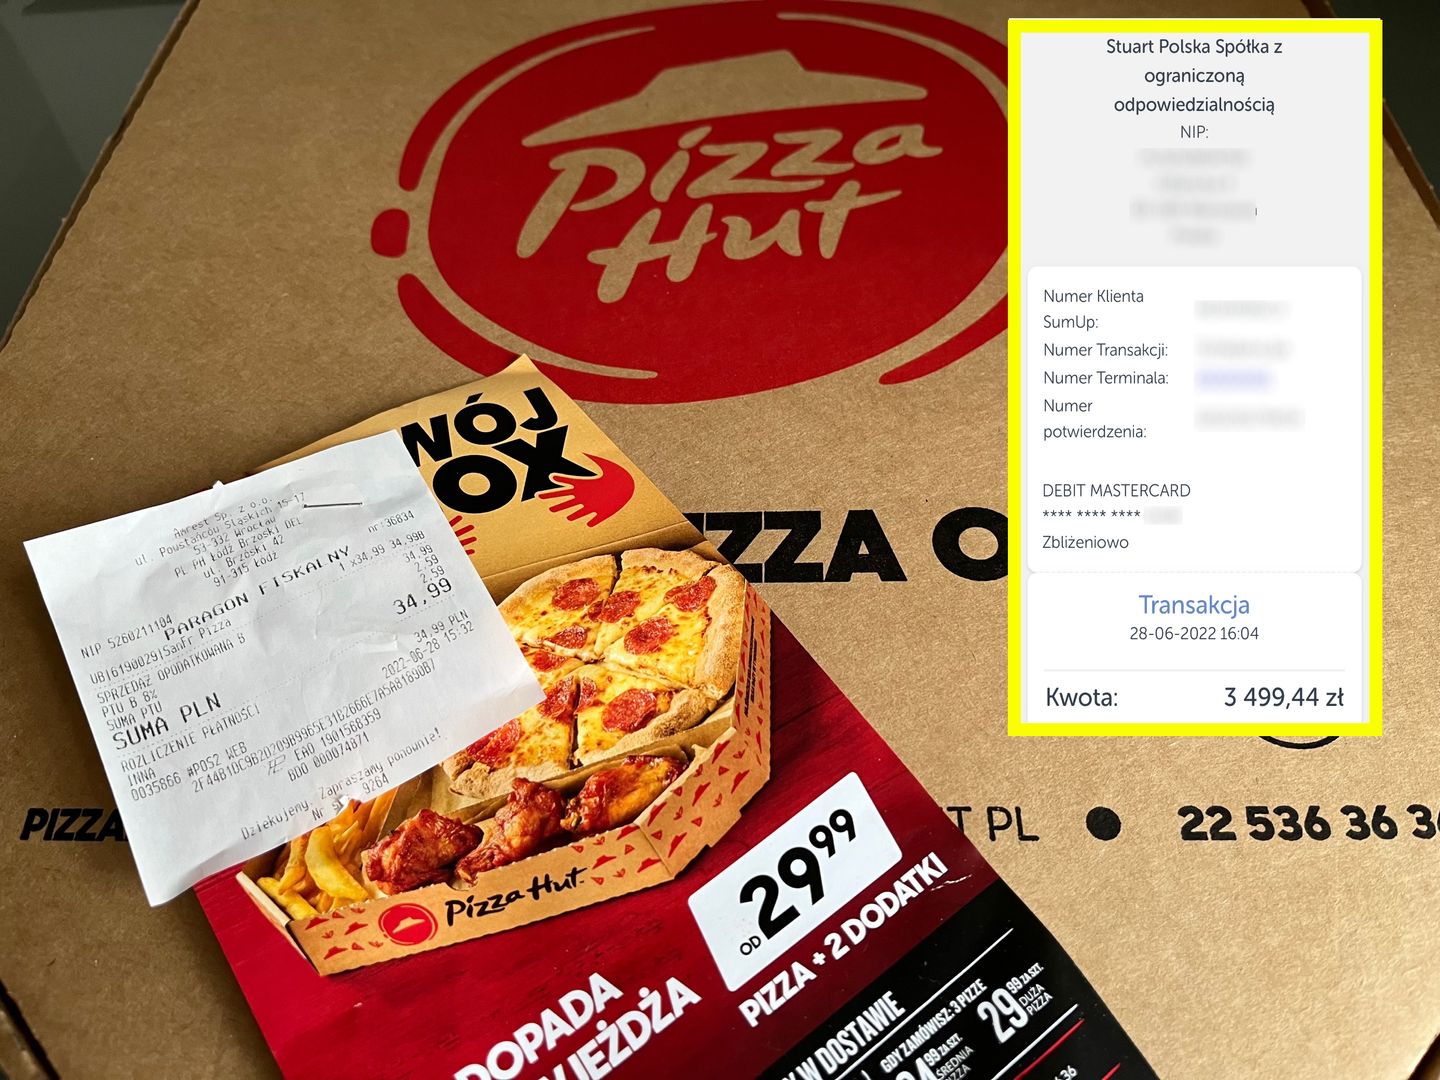 Łodzianin zapłacił za pizzę 3,5 tys. zł. Tak zachowała się restauracja